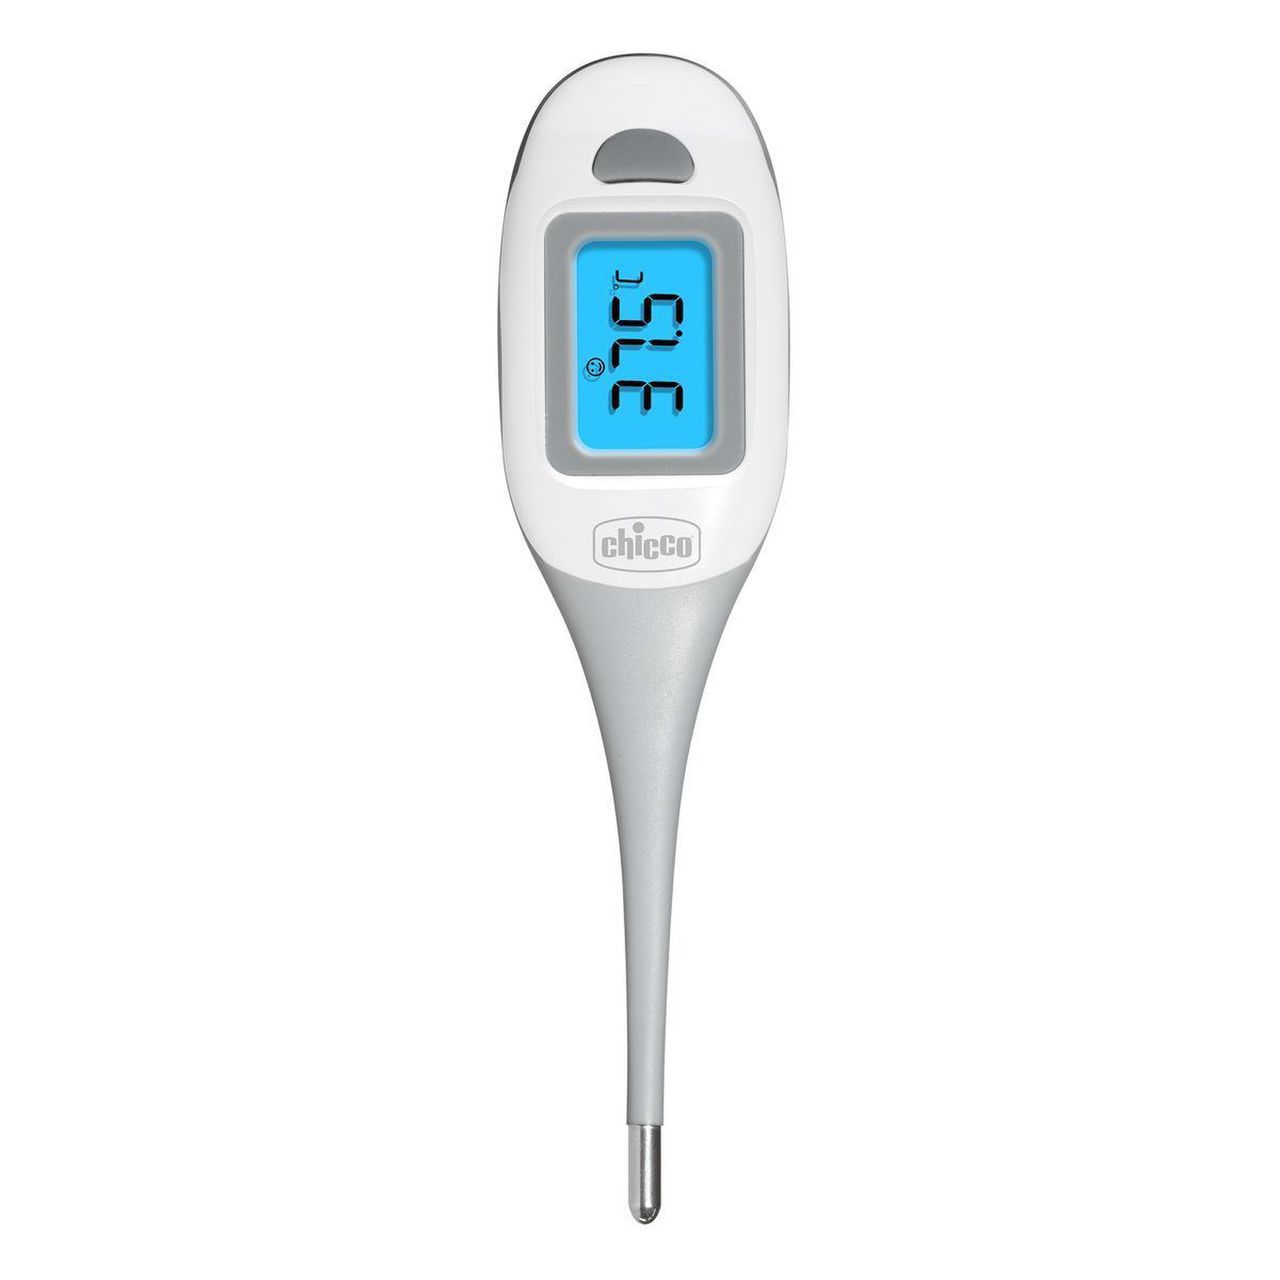 Thermomètre Digital Anatomique Rectal Bleu de Chicco, Thermomètre